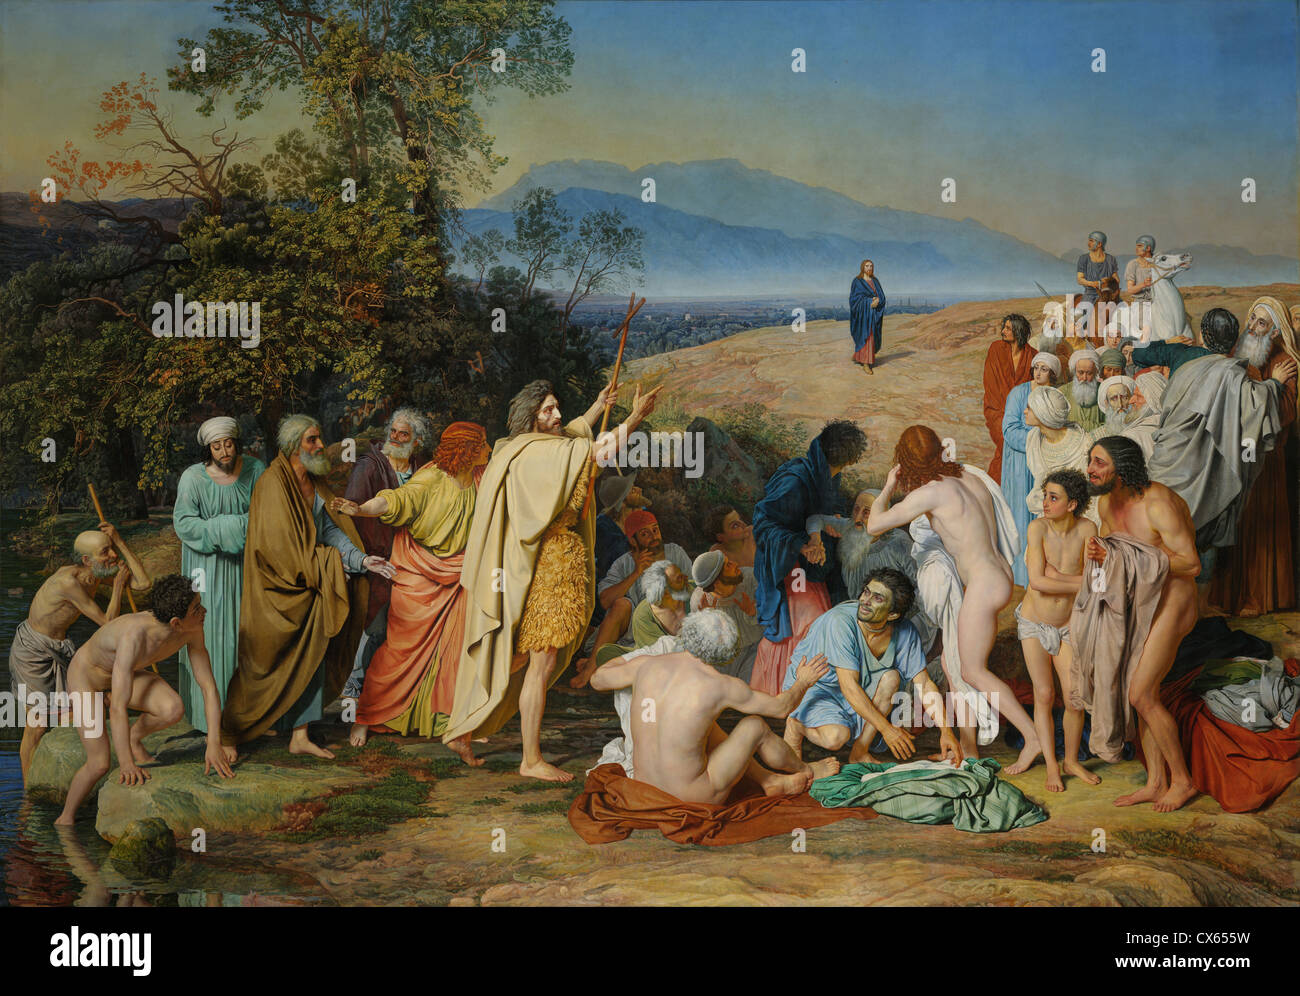 Alexander Andreyevich Iwanow der Erscheinung Christi vor den Menschen, zwischen 1837 und 1857 - Sehr hohe Qualität und Auflösung Bild gemalt Stockfoto